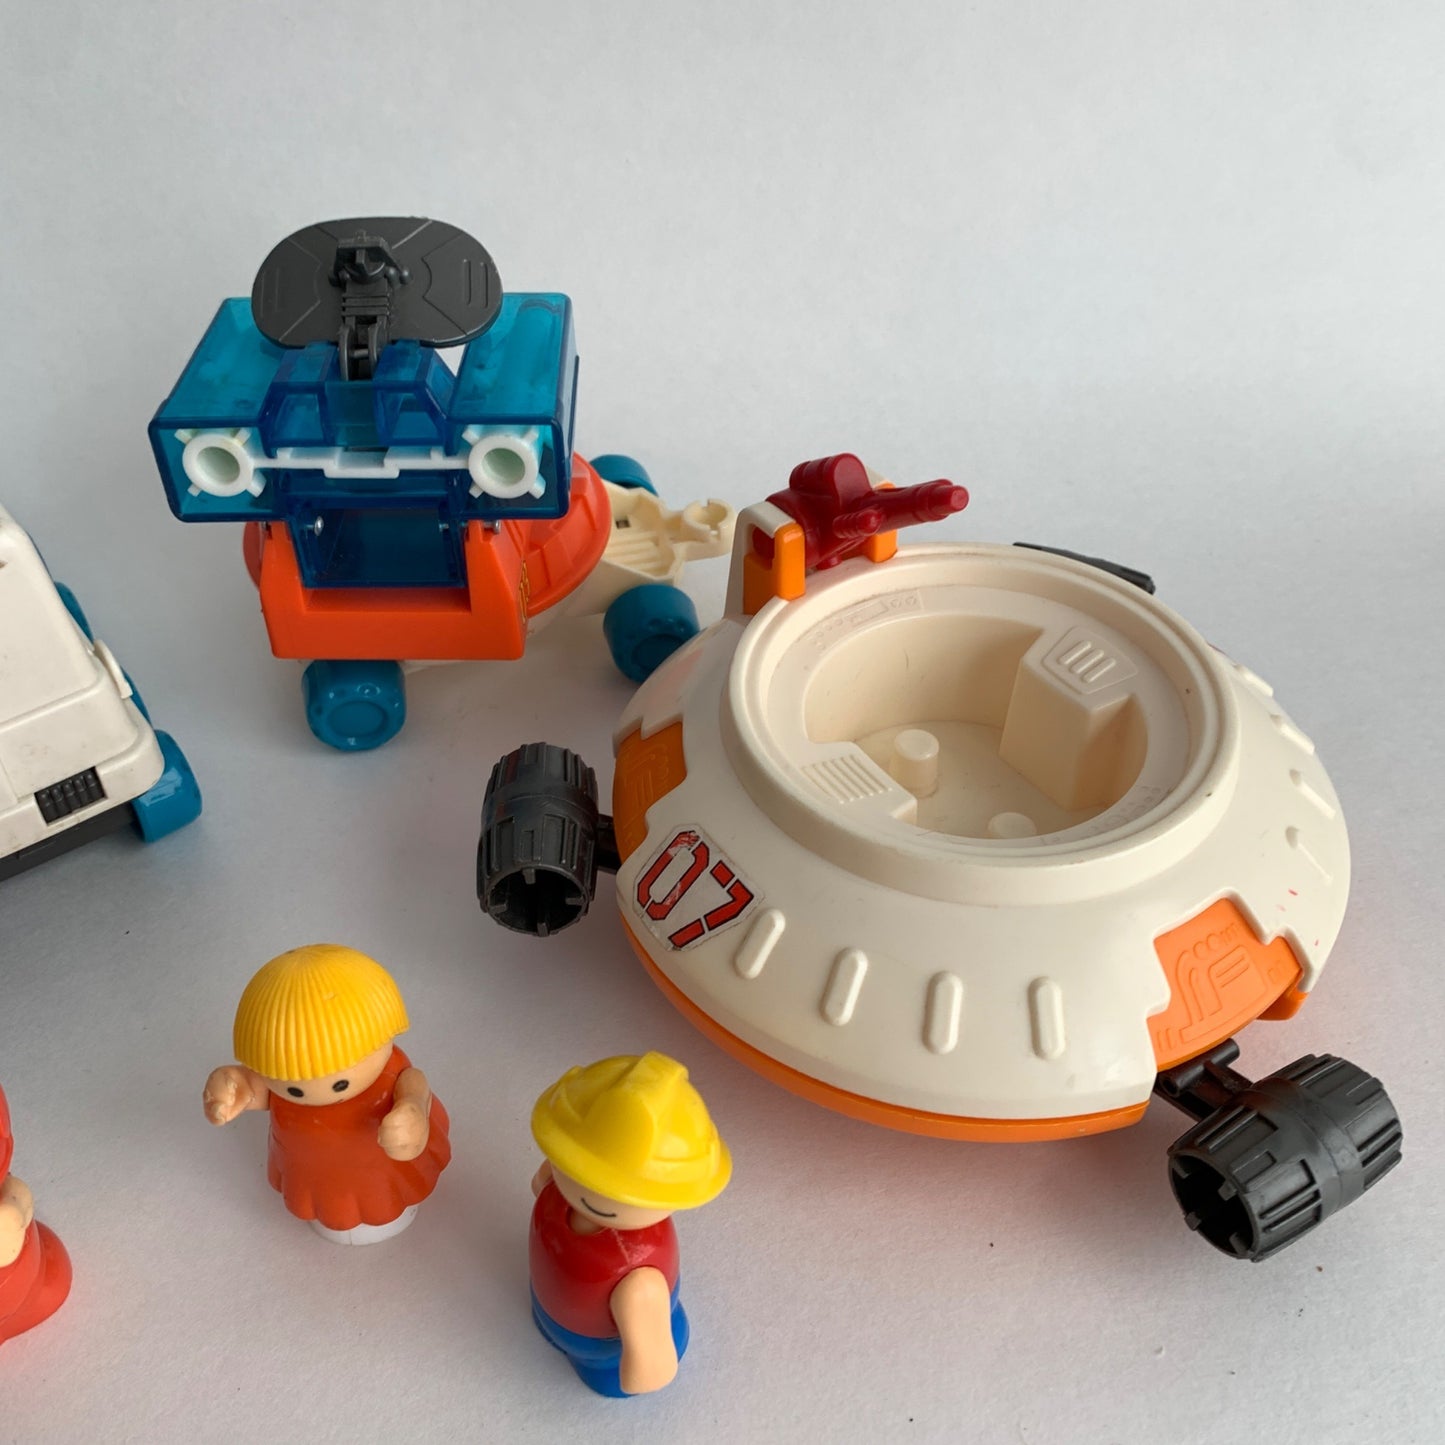 Vintage Playmate Playskool Space Station Set